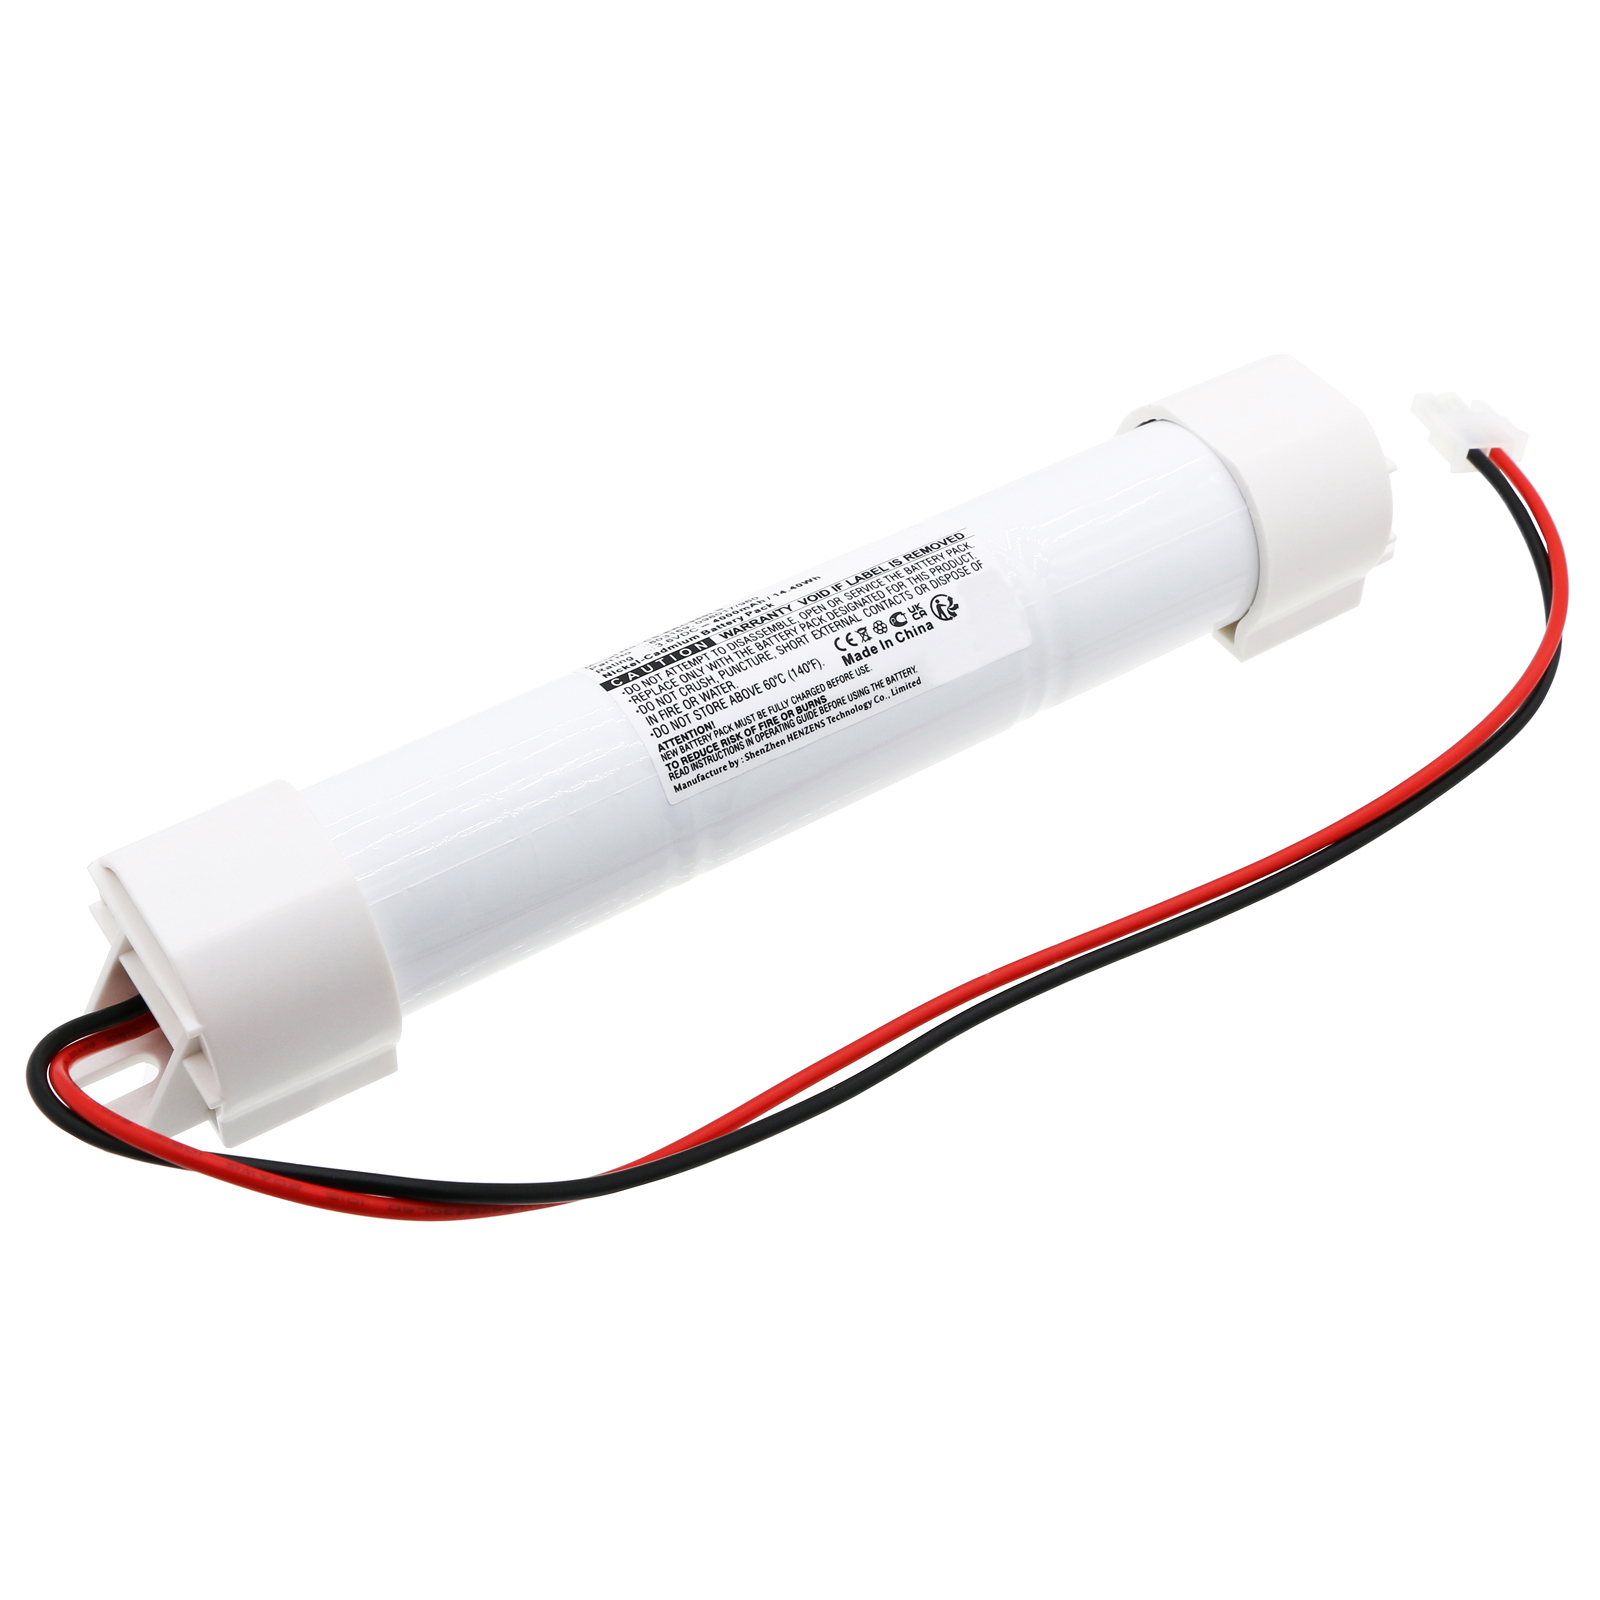 Synergy Digital Emergency Lighting Battery, Compatible with ERC 098017/960, 803169 Emergency Lighting Battery (Ni-CD, 3.6V, 4000mAh)